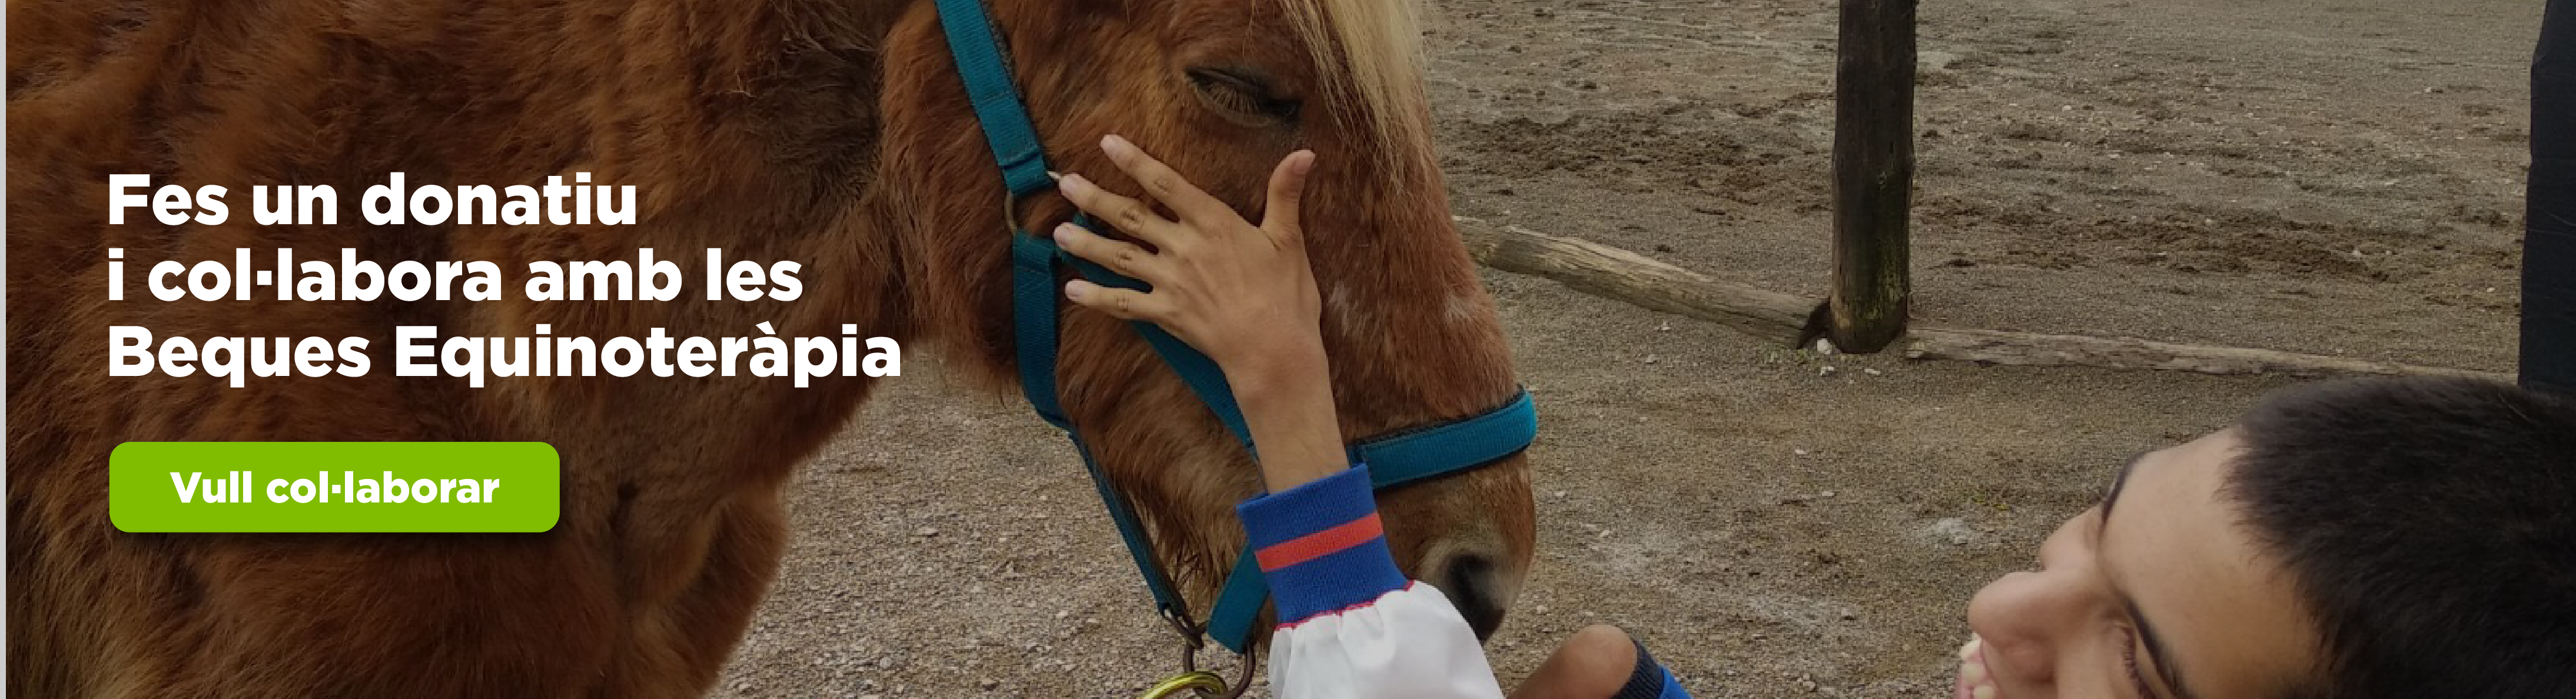 Imatge d'un infant acariciant un cavall. Per col·laborar amb una campanya de donació per a beques d'equinoteràpia. 